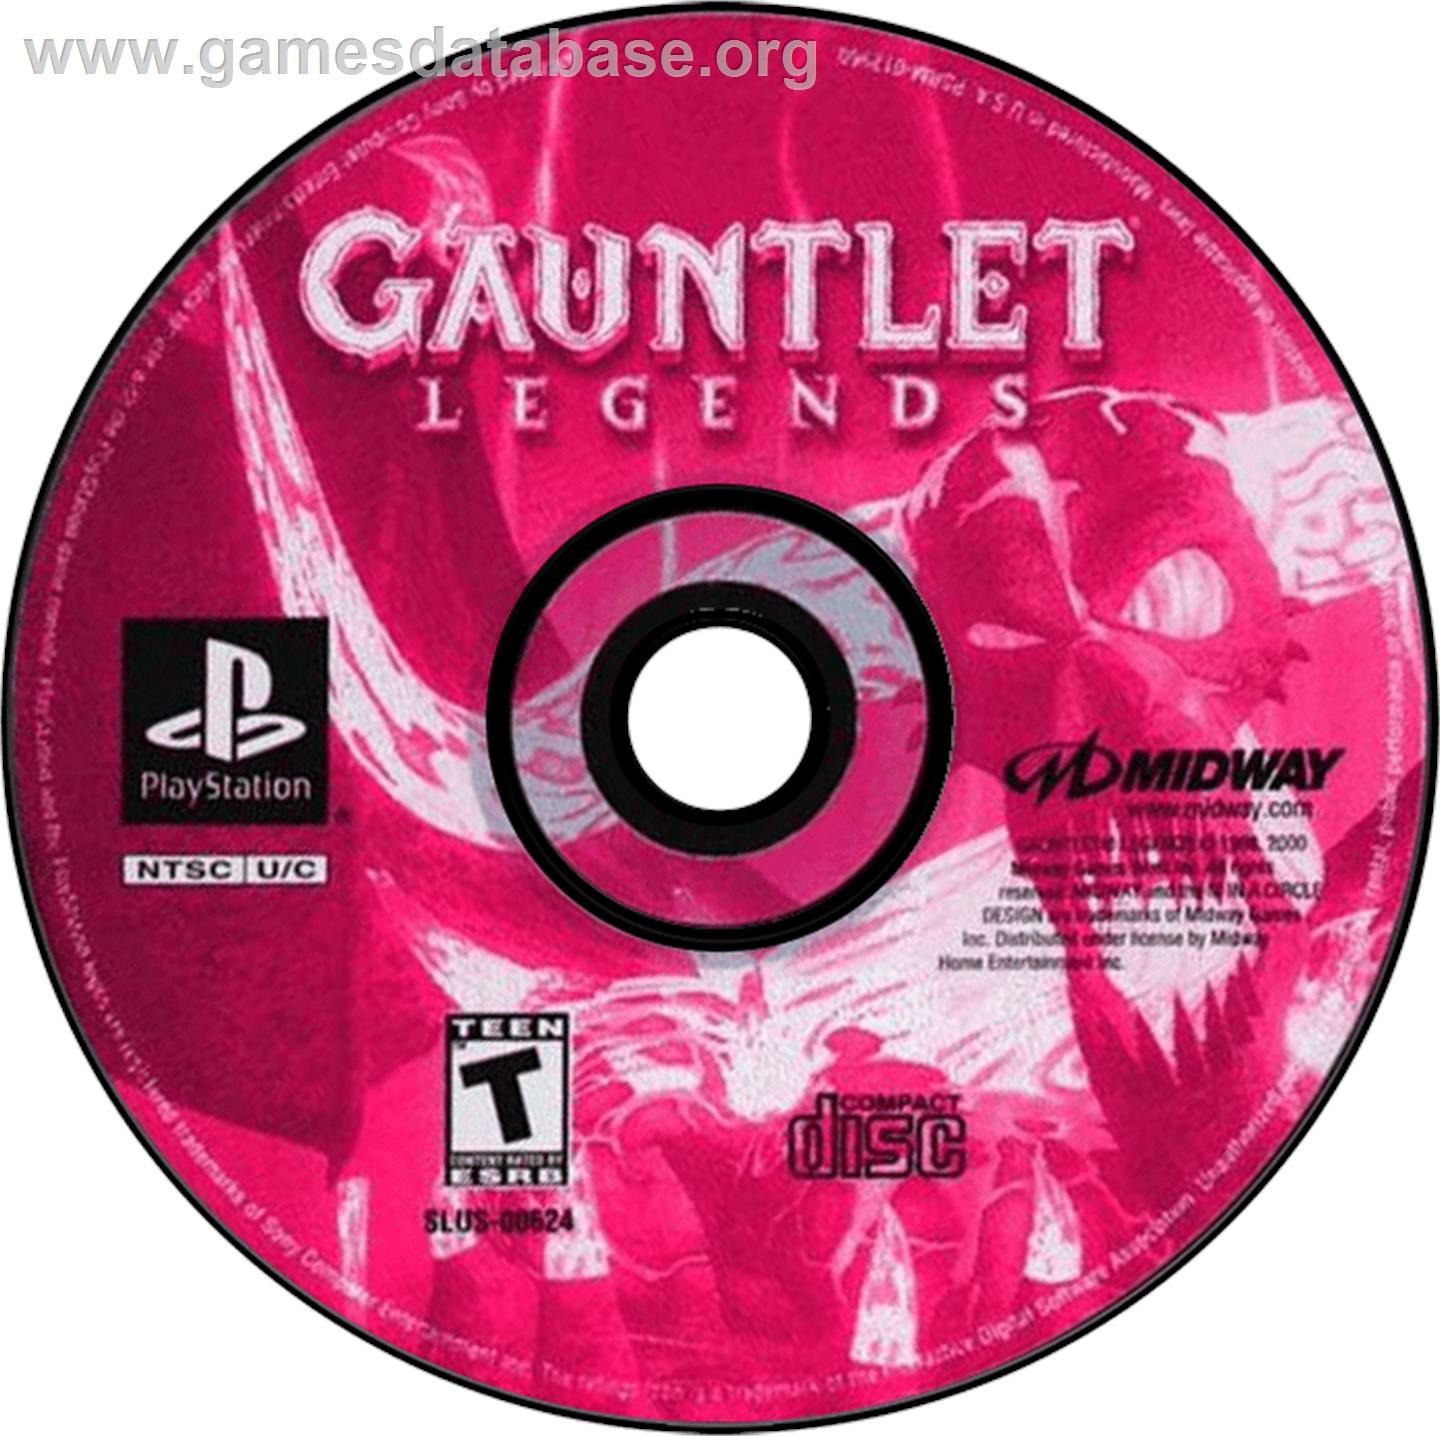 Gauntlet Legends - Sony Playstation - Artwork - Disc